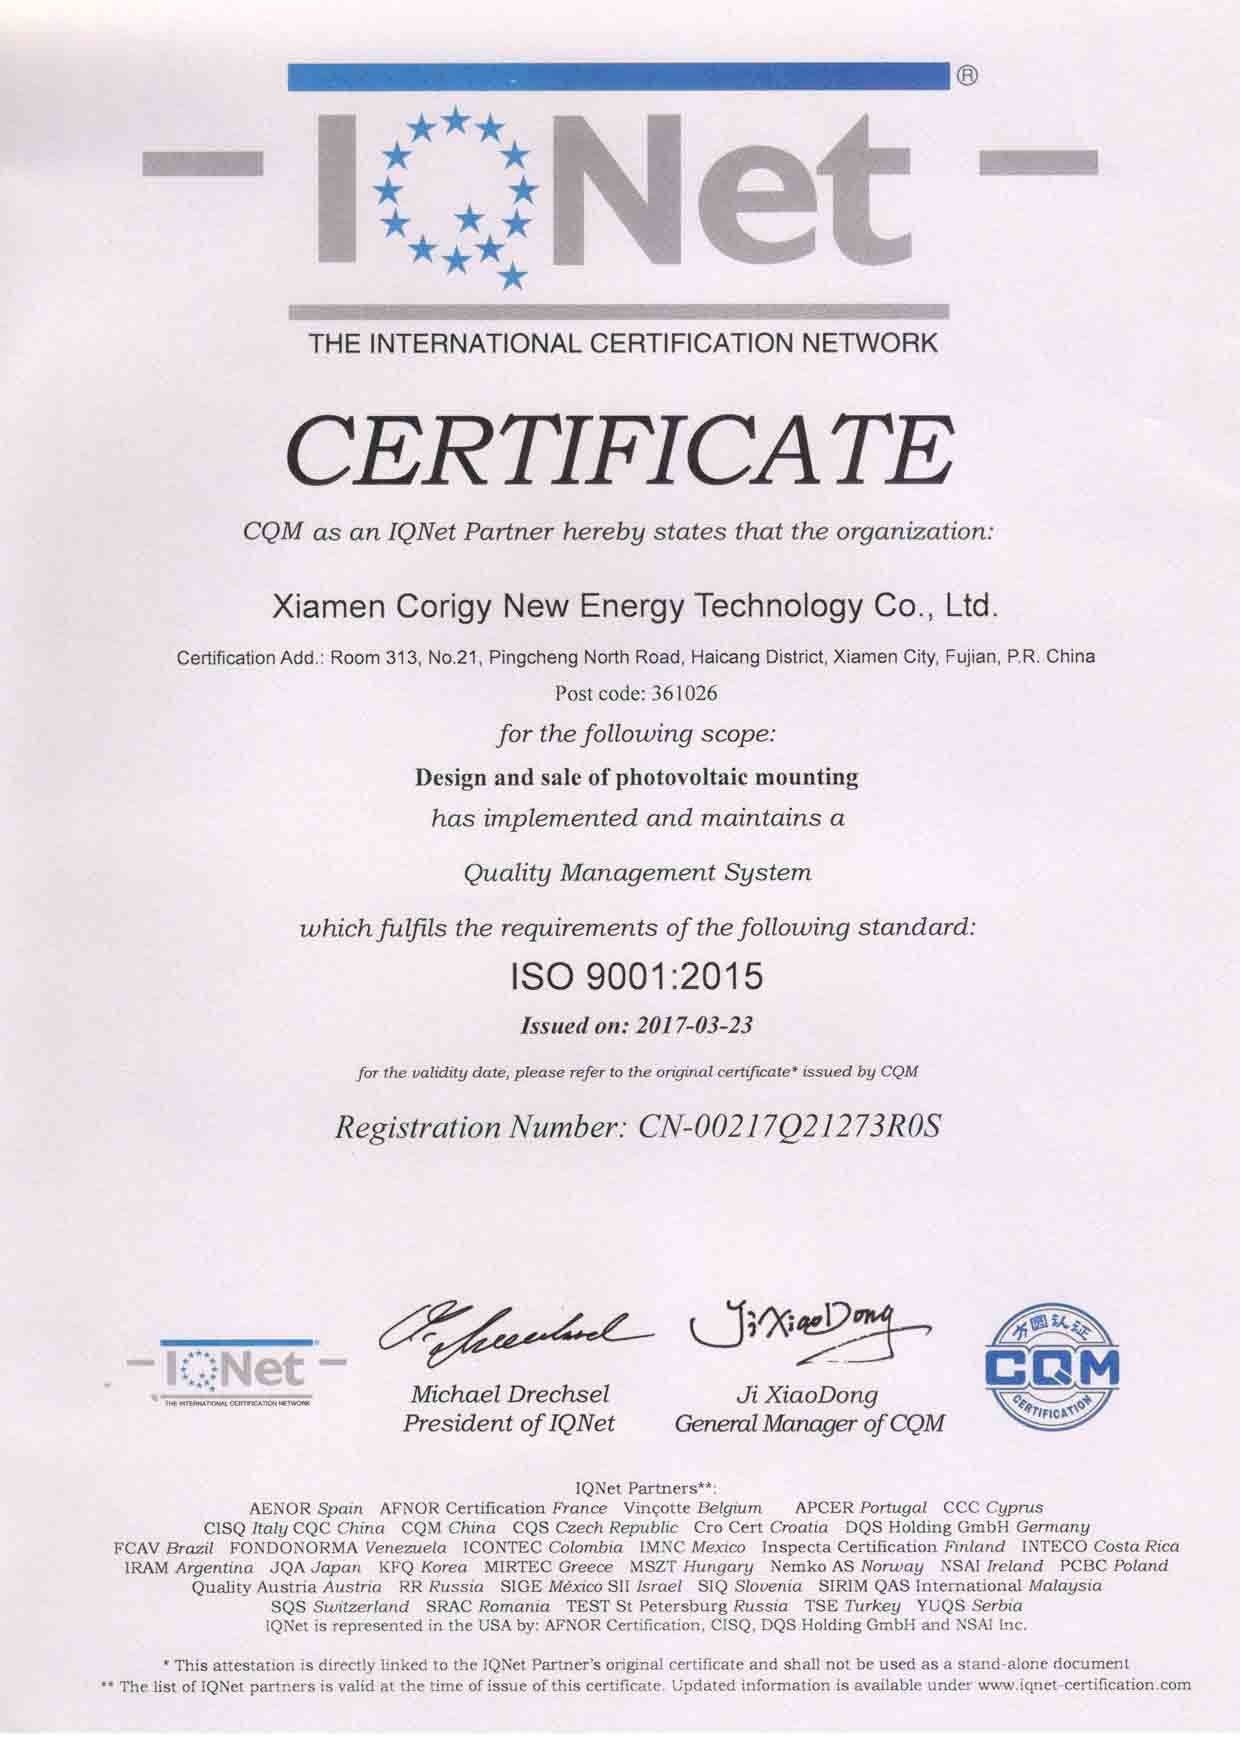 La certificación ISO para solar sistema de montaje corigy